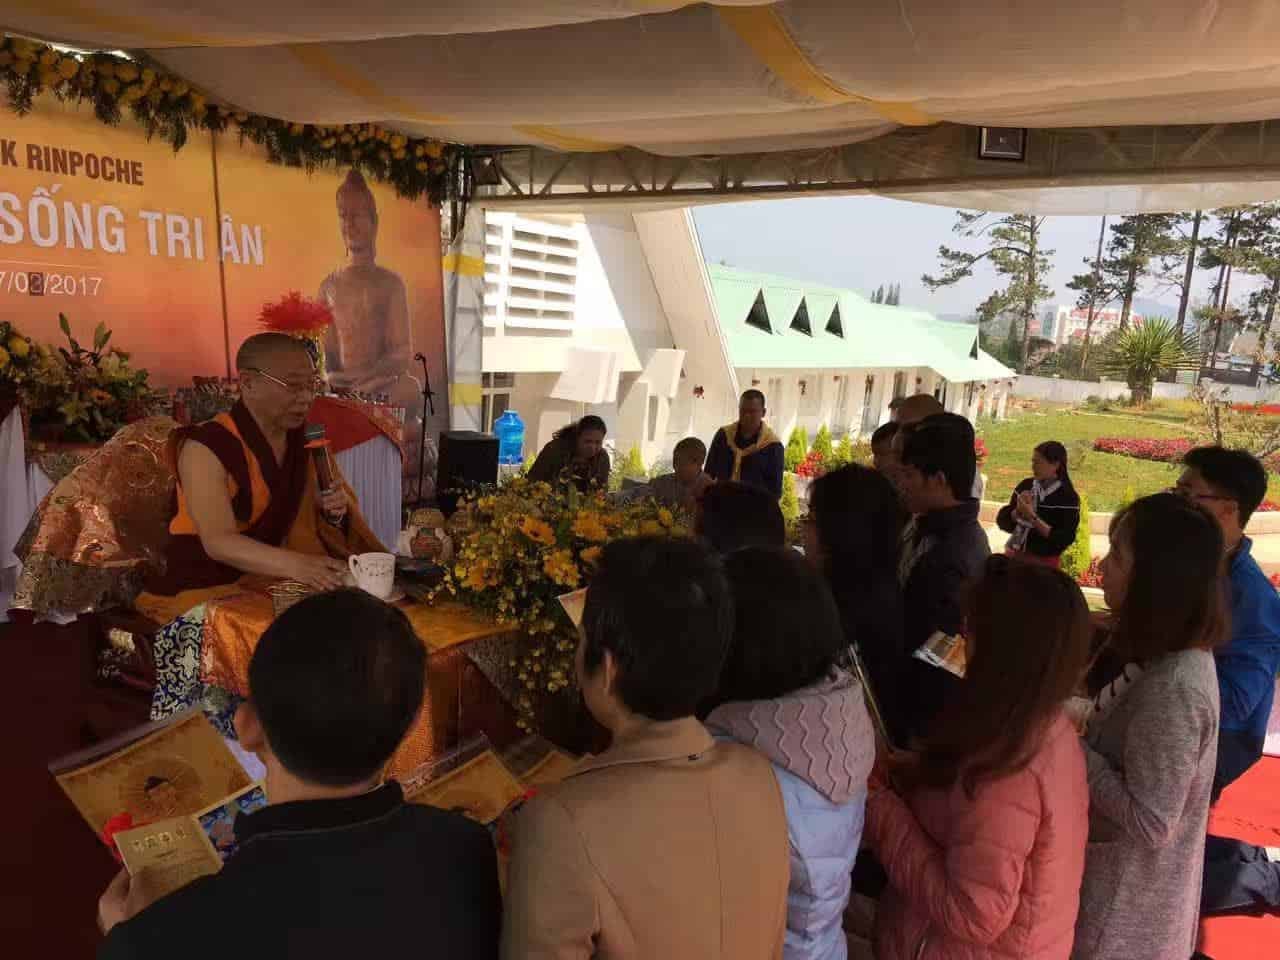 Gosok Rinpoche Vietnam 2017-03-05 6af19a05bf9de97473b5e2c7a61e2ca